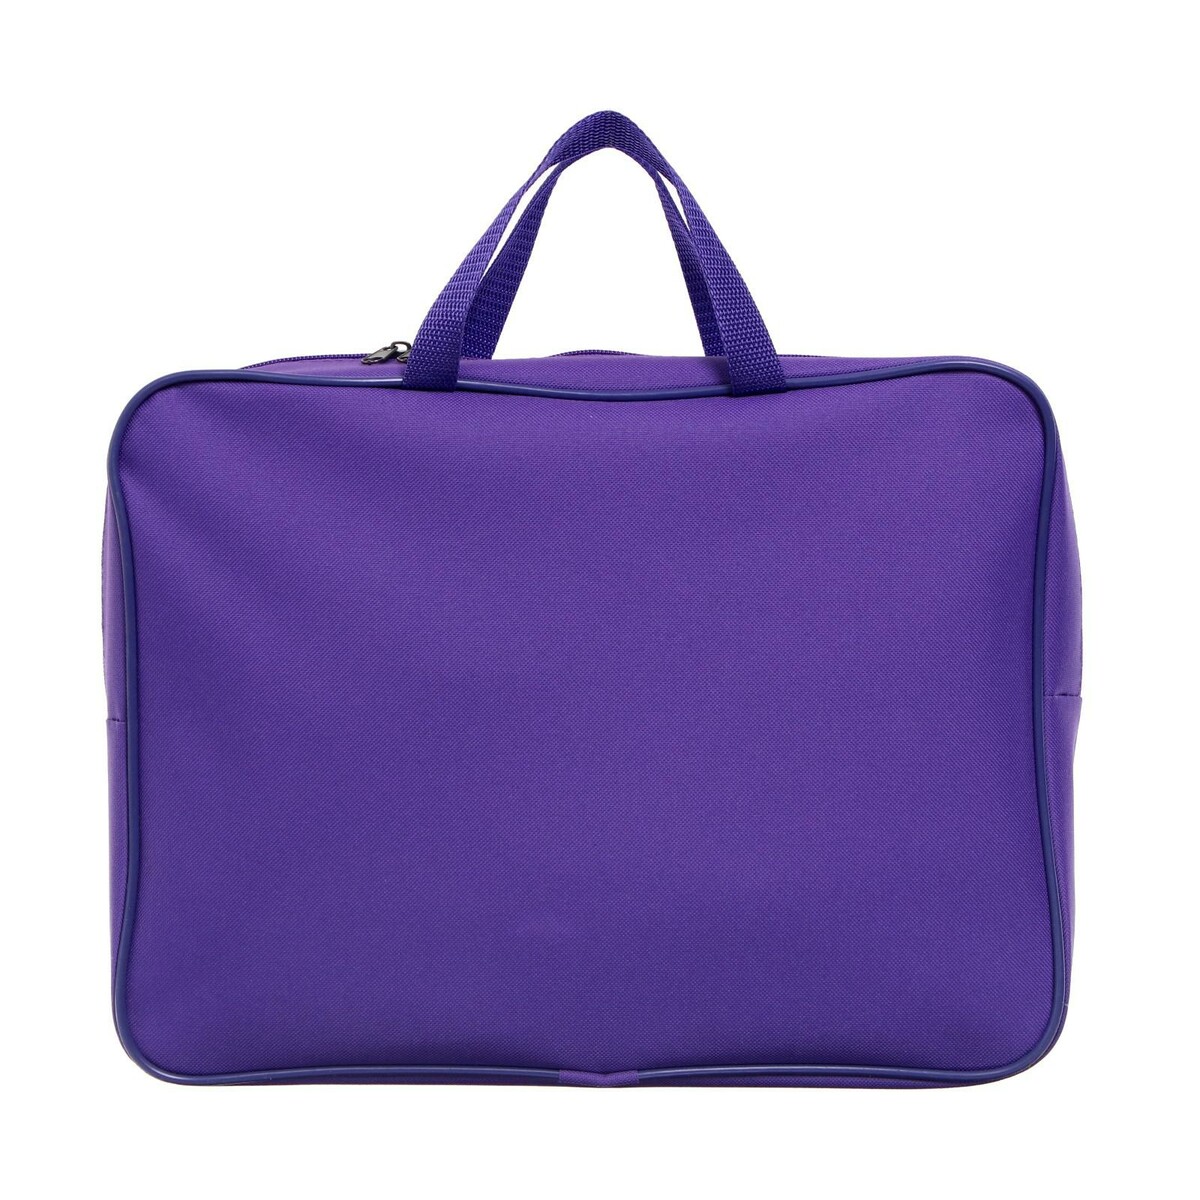 Папка с ручками а4, 360 х 270 х 80 мм, текстильная, внутренний карман, фиолетовый 1ш48 рюкзак молодежный на молнии наружный карман фиолетовый